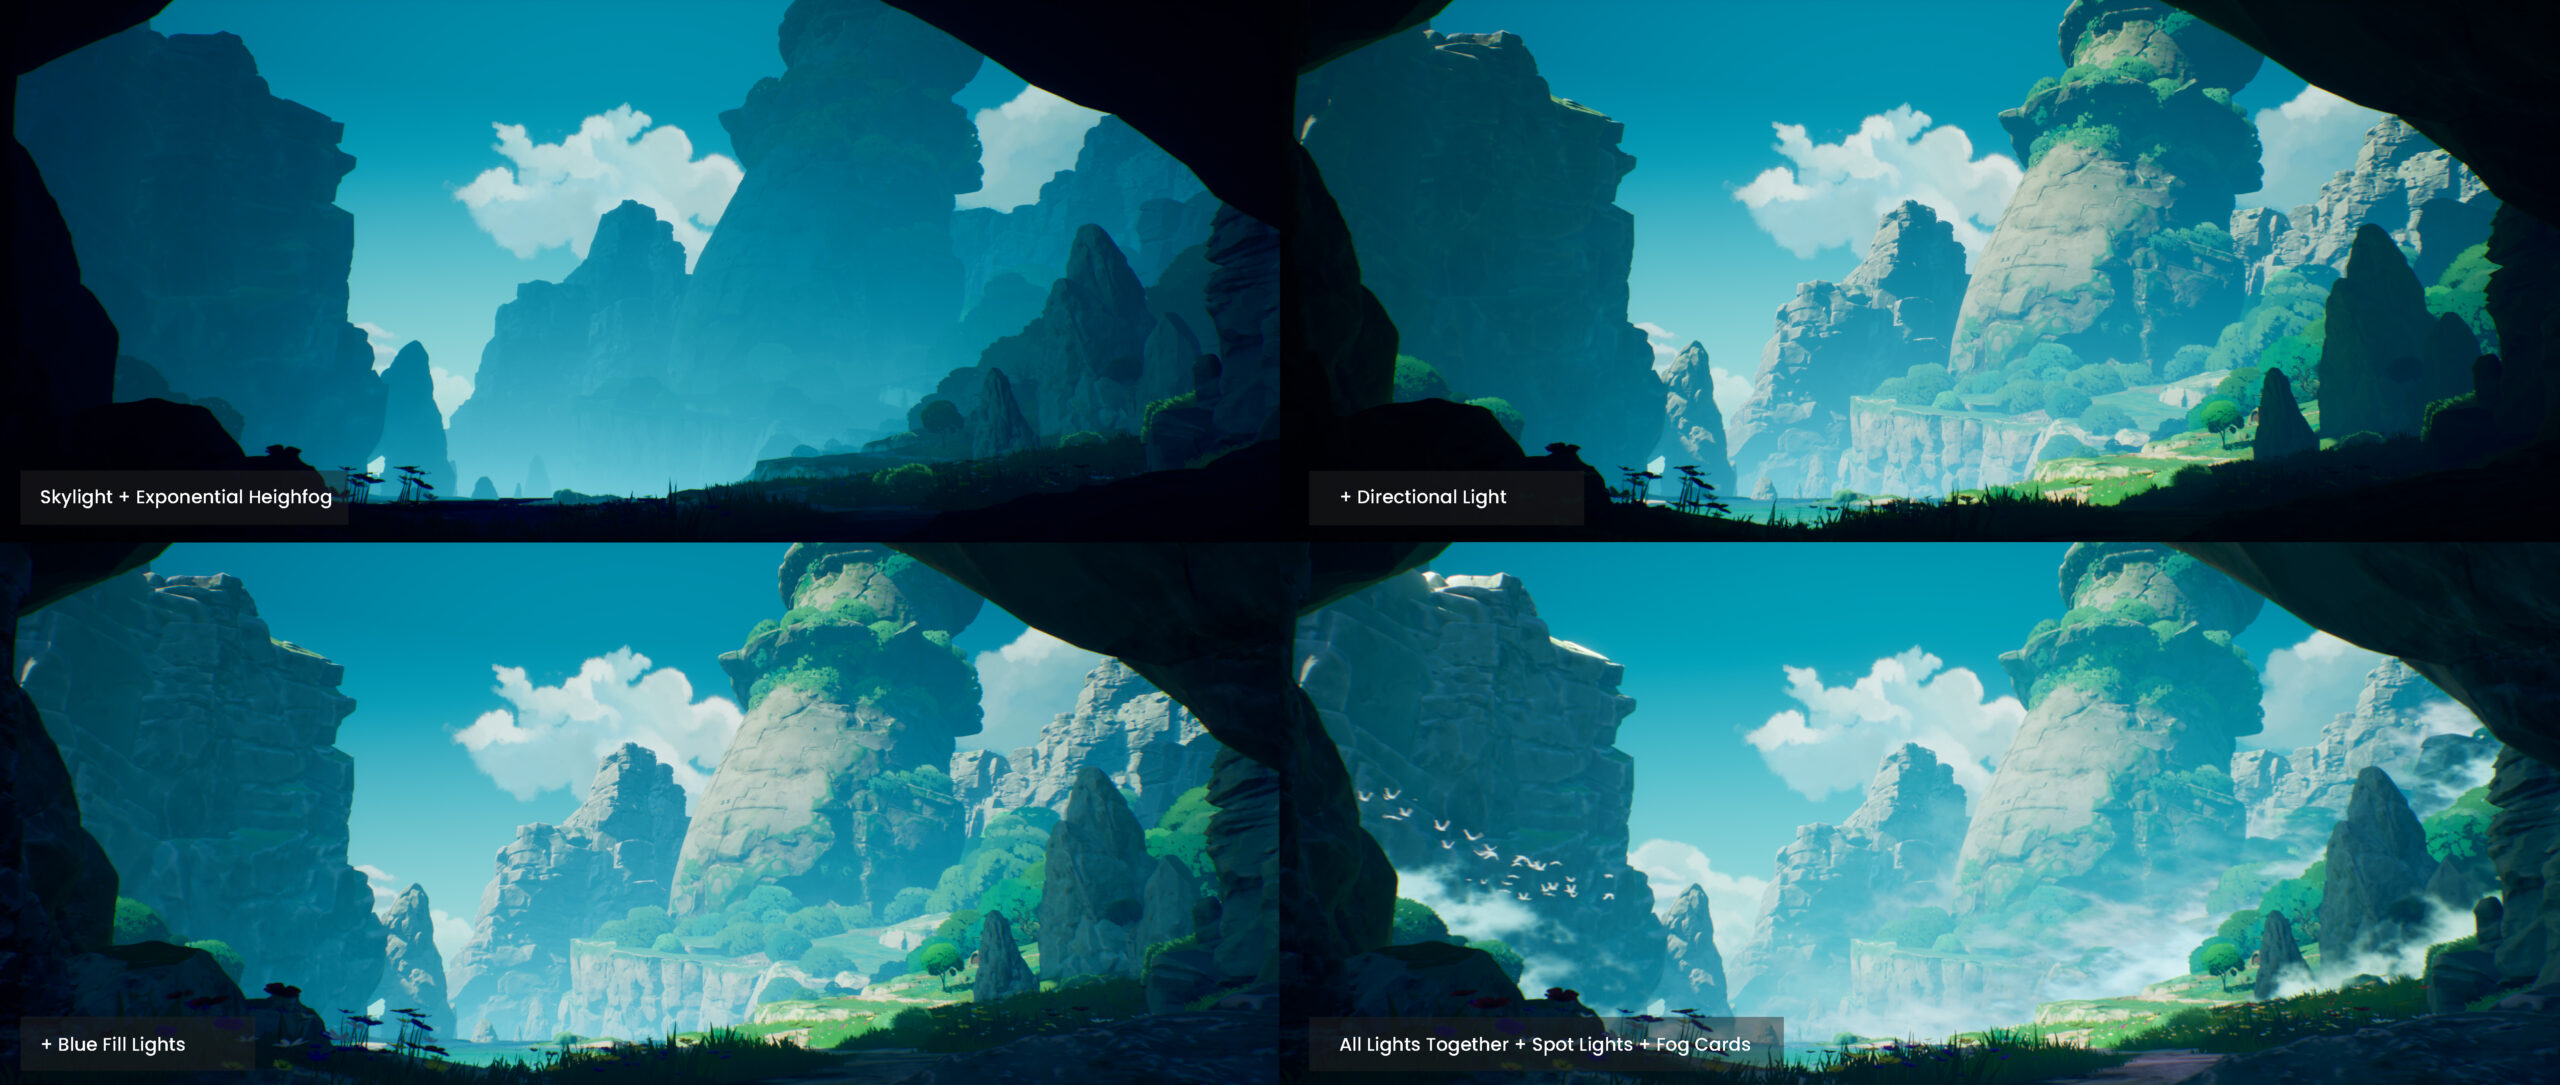 Iluminación y Post-Proceso de esta isla inspirada en Ghibli